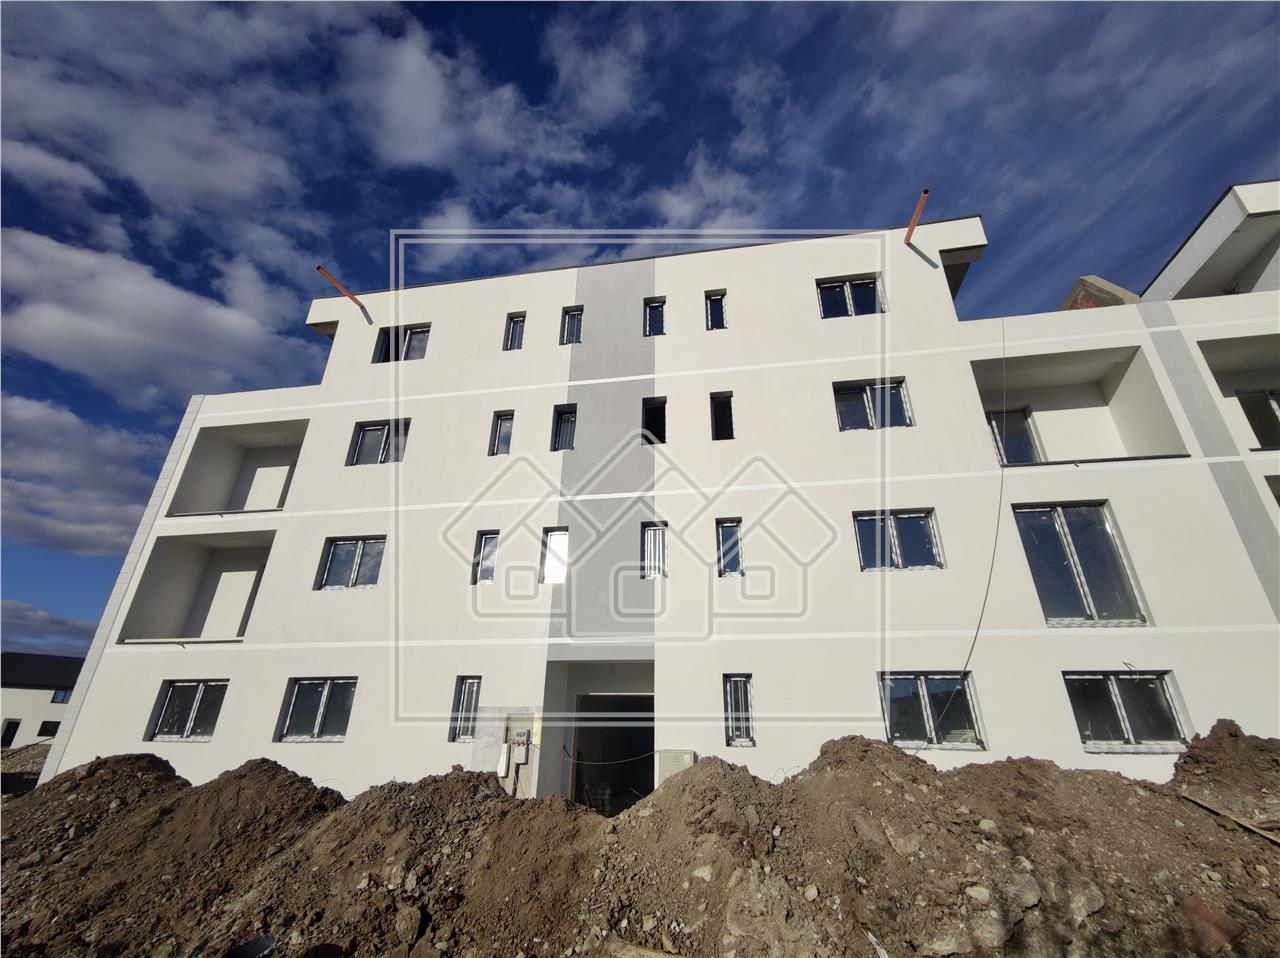 Wohnung zum Verkauf in Sibiu, Selimbar - 2 Zimmer - Etage 1 - Fu?boden